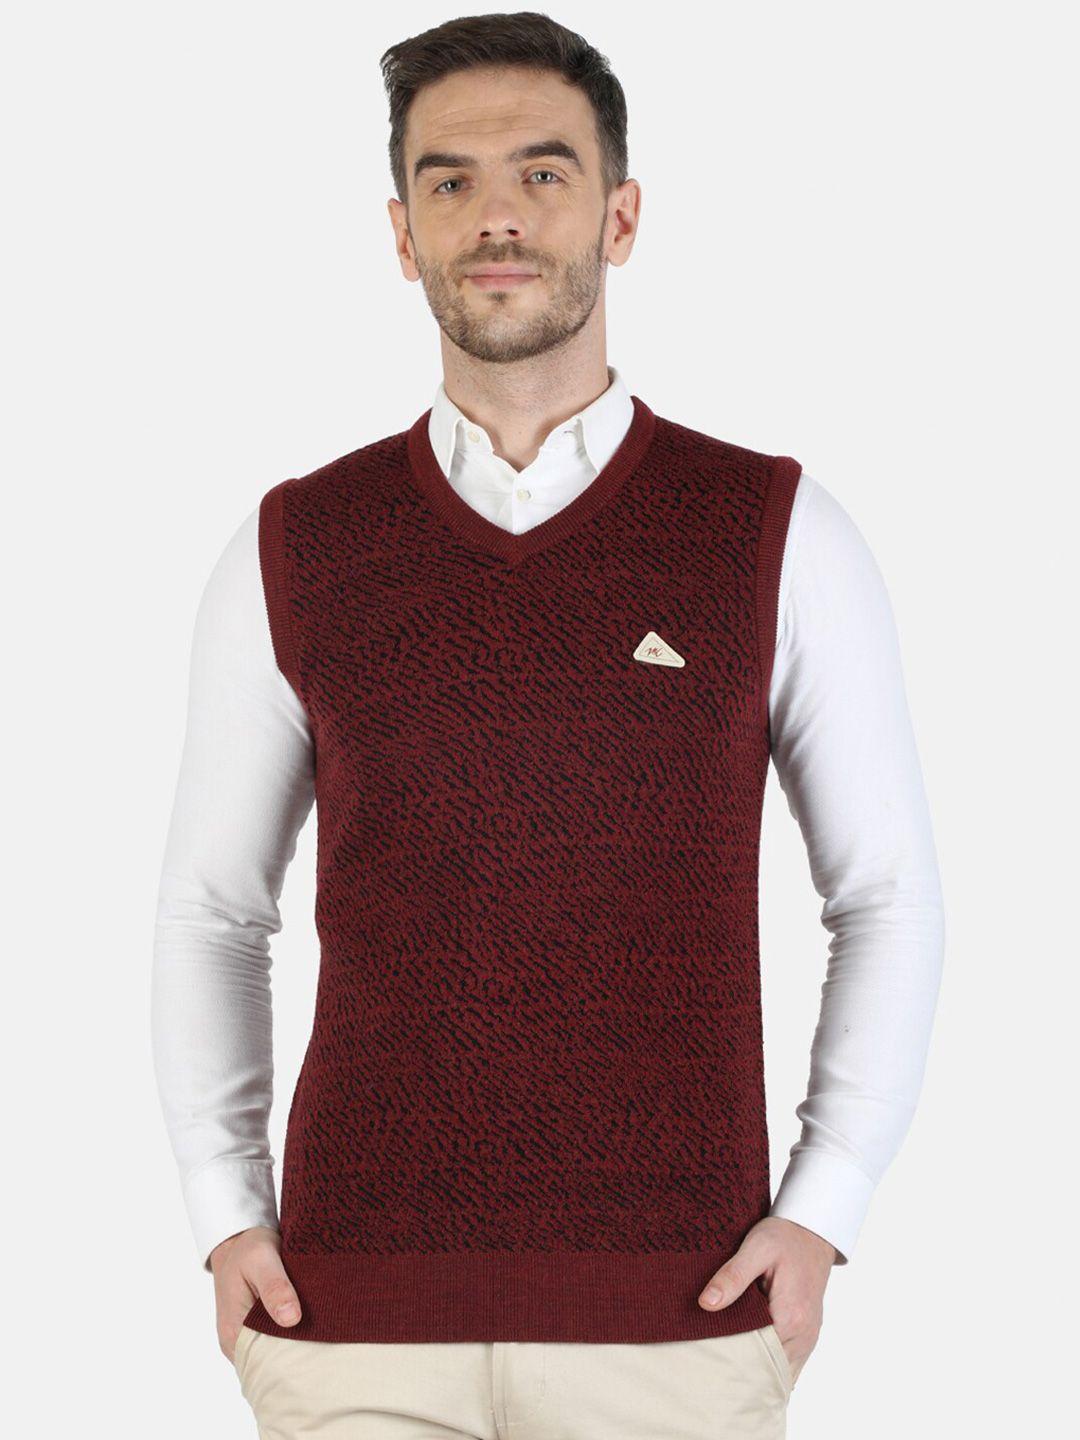 monte-carlo-men-maroon-&-black-animal-printed-sweater-vest